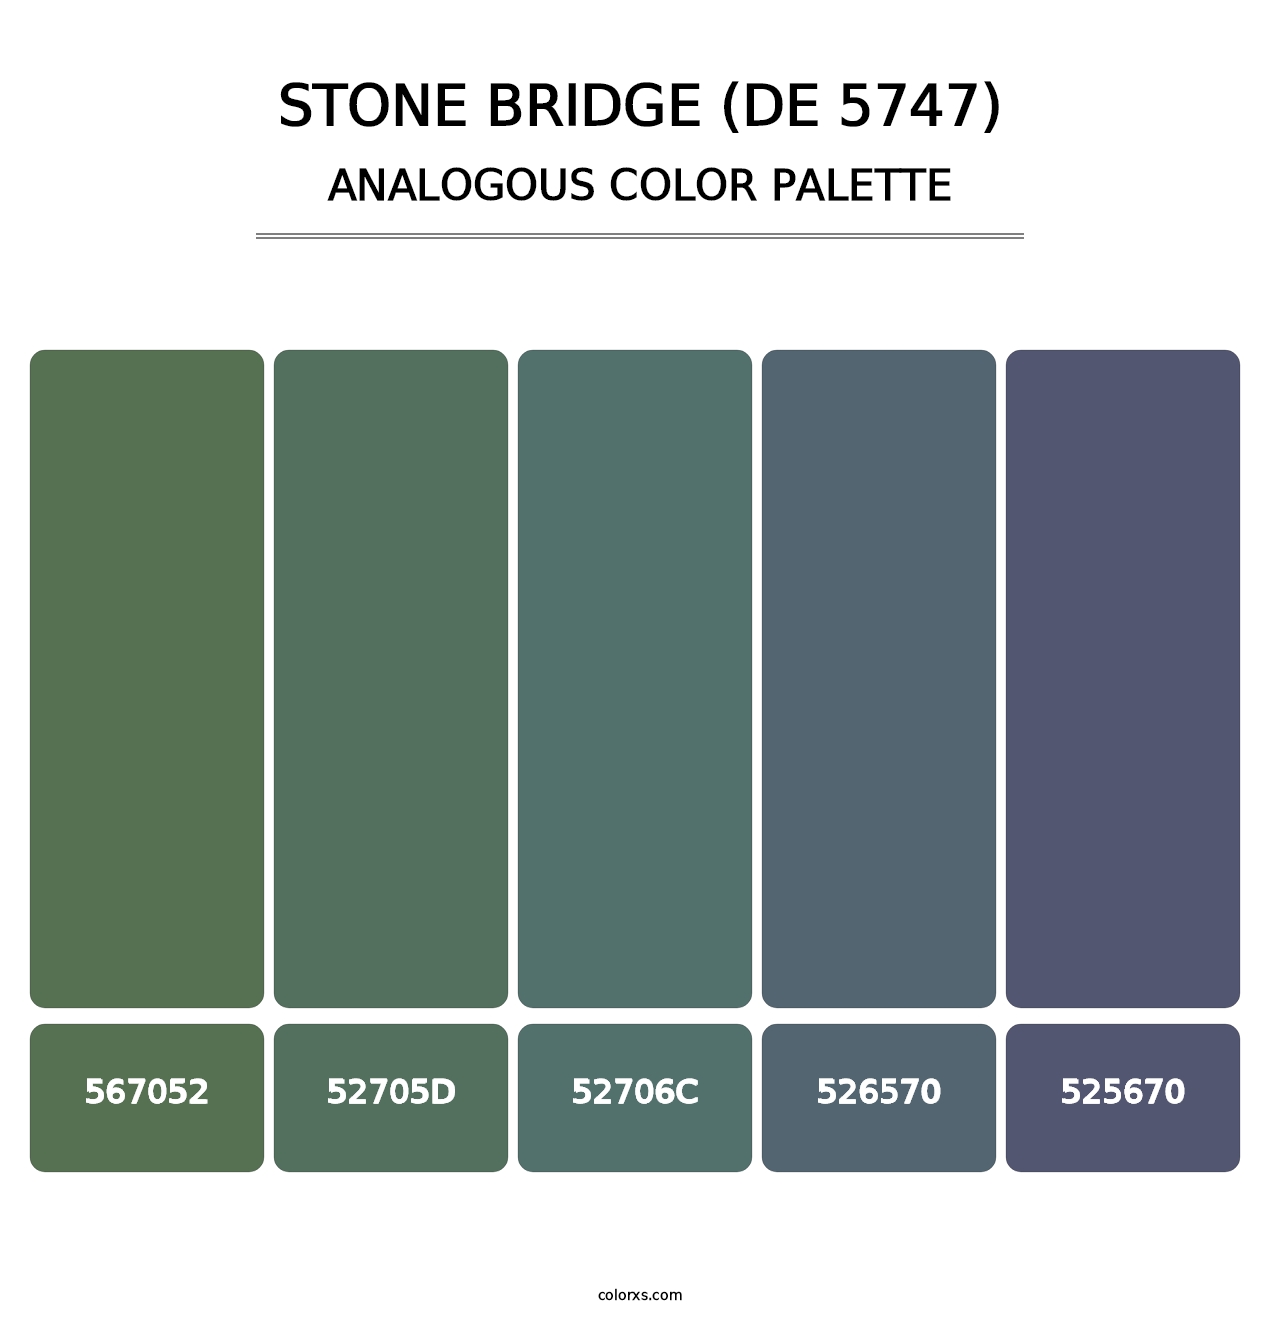 Stone Bridge (DE 5747) - Analogous Color Palette